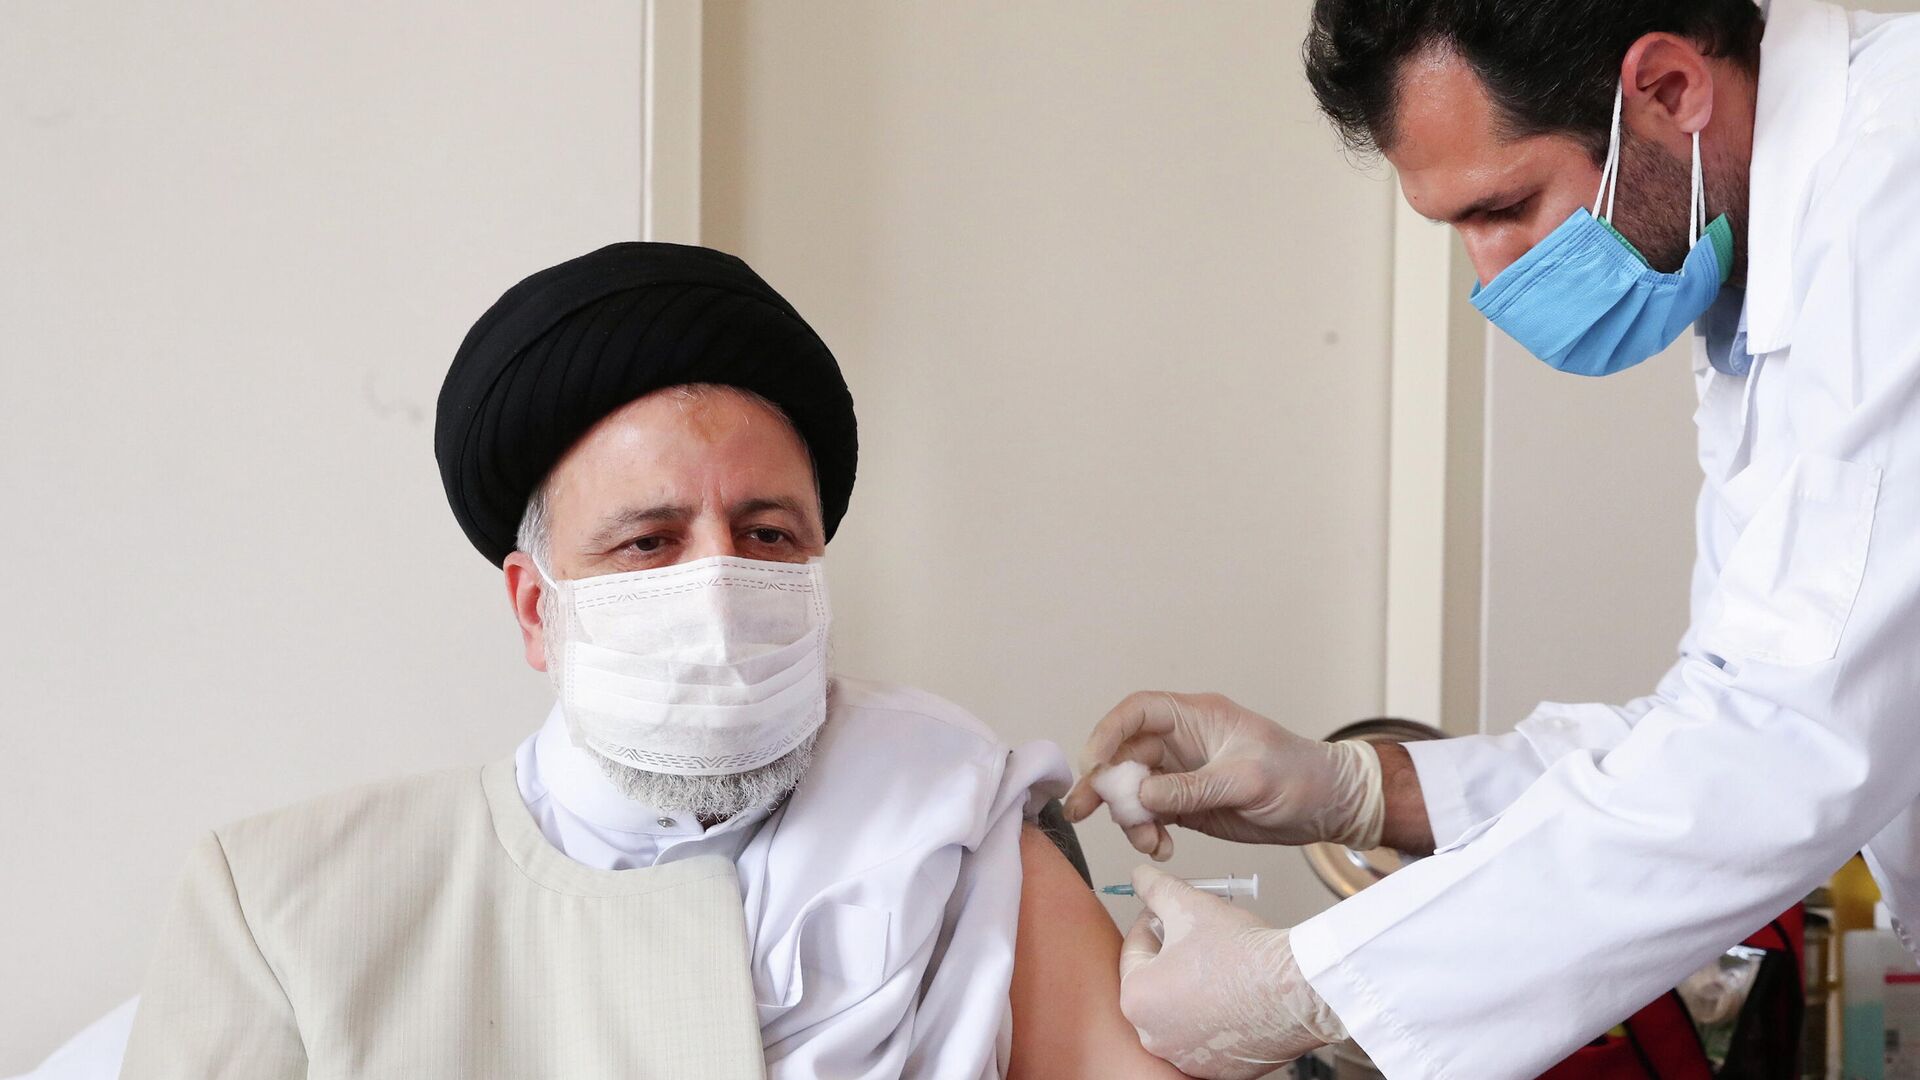 El presidente de Irán, Ebrahim Raisi, recibe la primera dosis de la vacuna nacional contra el COVID-19 - Sputnik Mundo, 1920, 08.08.2021